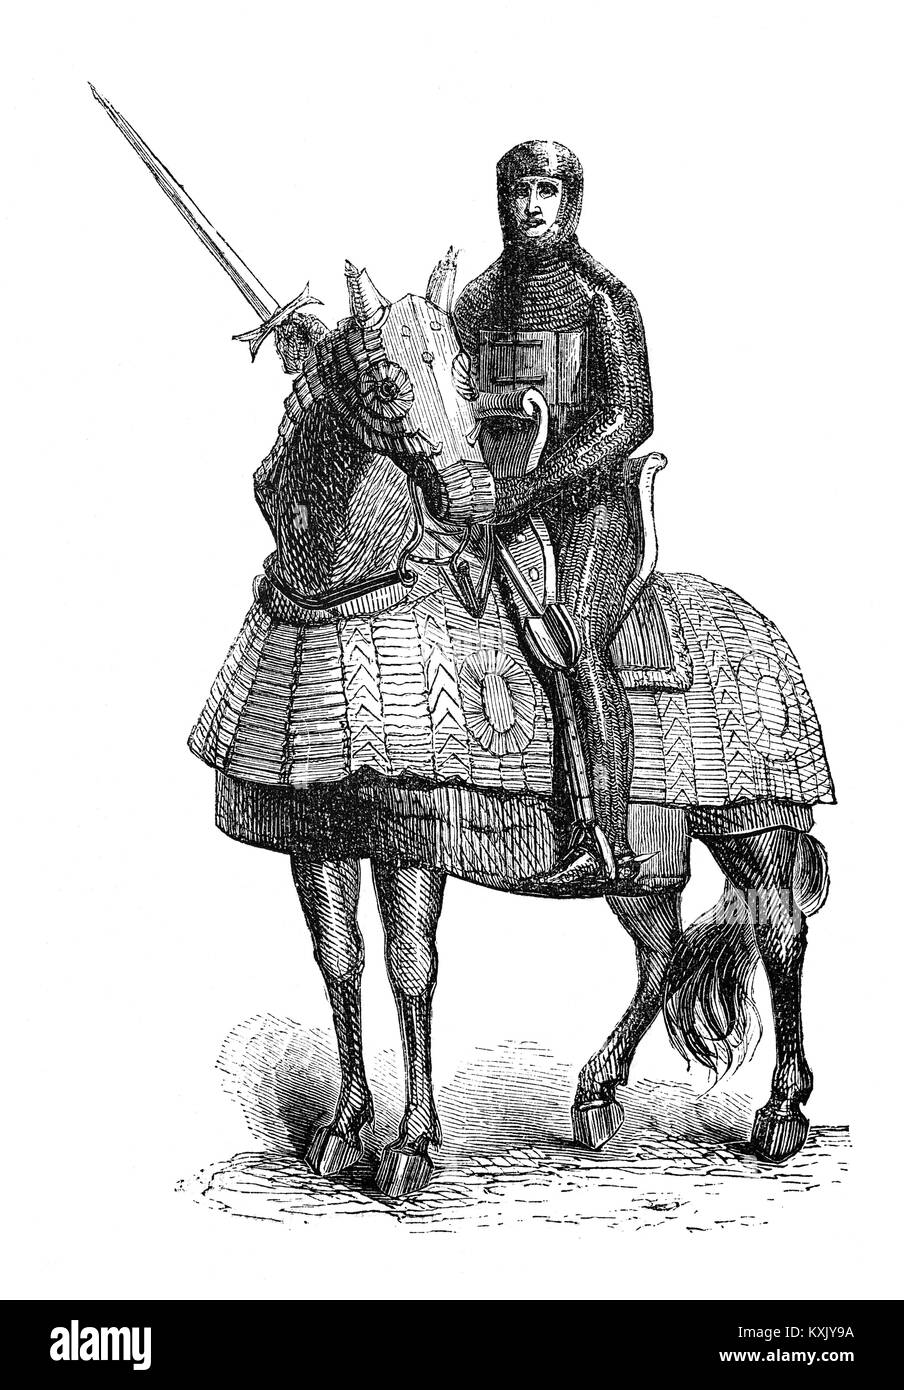 Uno di Richard I soldati montato sulla Terza Crociata (1189-1192), anche conosciuto come il re' crociata. È stato un tentativo da parte dei leader europei per riconquistare la Terra Santa dal Saladino (Ṣalāḥ ad-Dīn Yūsuf ibn Ayyūb). La campagna è stata in gran parte riuscito a catturare le importanti città di Acri e Jaffa e invertendo la maggior parte di Saladino le conquiste, ma esso non è riuscito a catturare Gerusalemme, emotivo e motivazione spirituale della Crociata. Foto Stock